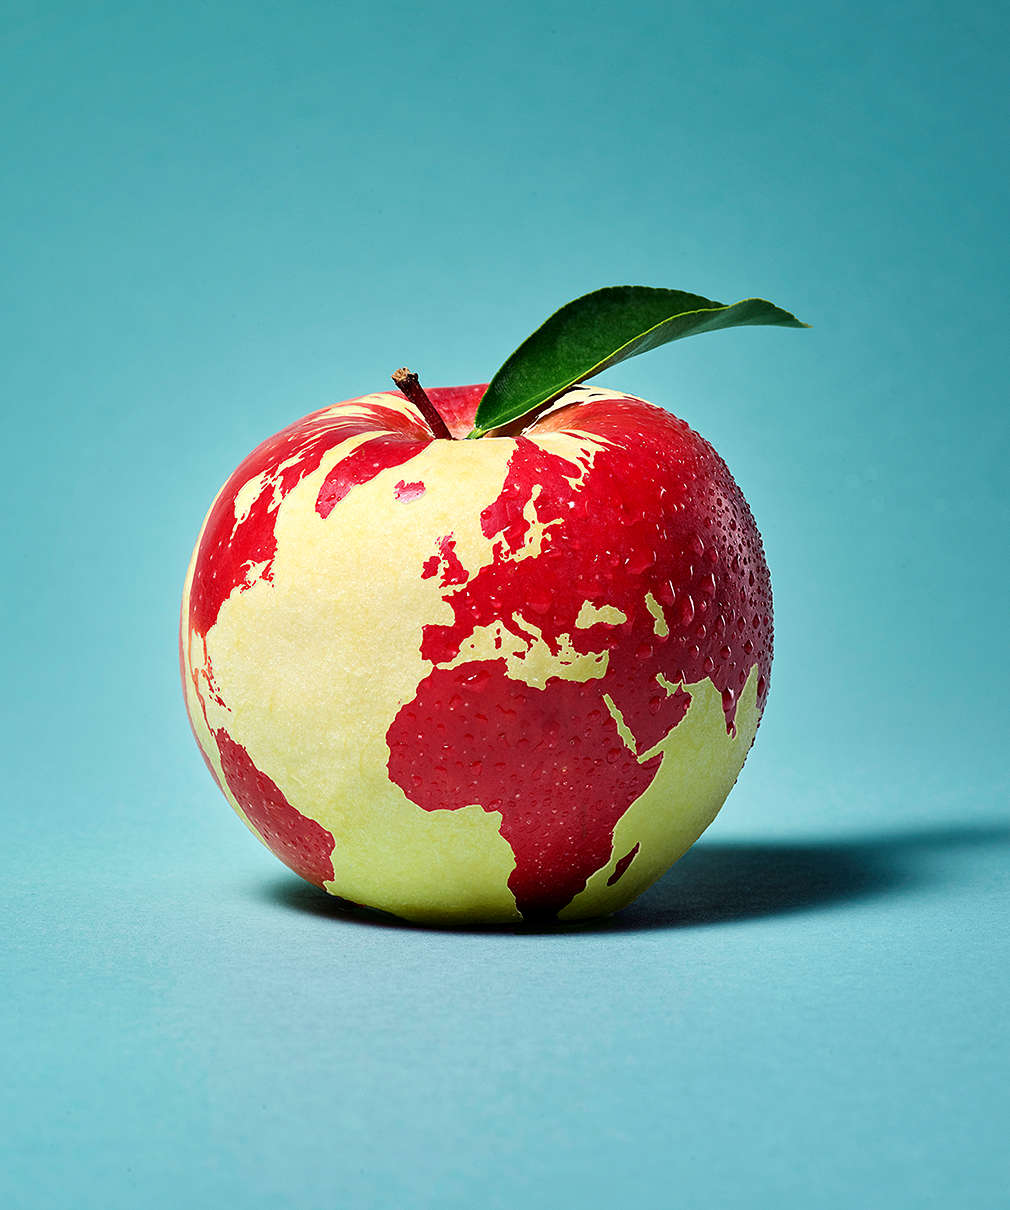 Изображение на земното кълбо във вид на ябълка